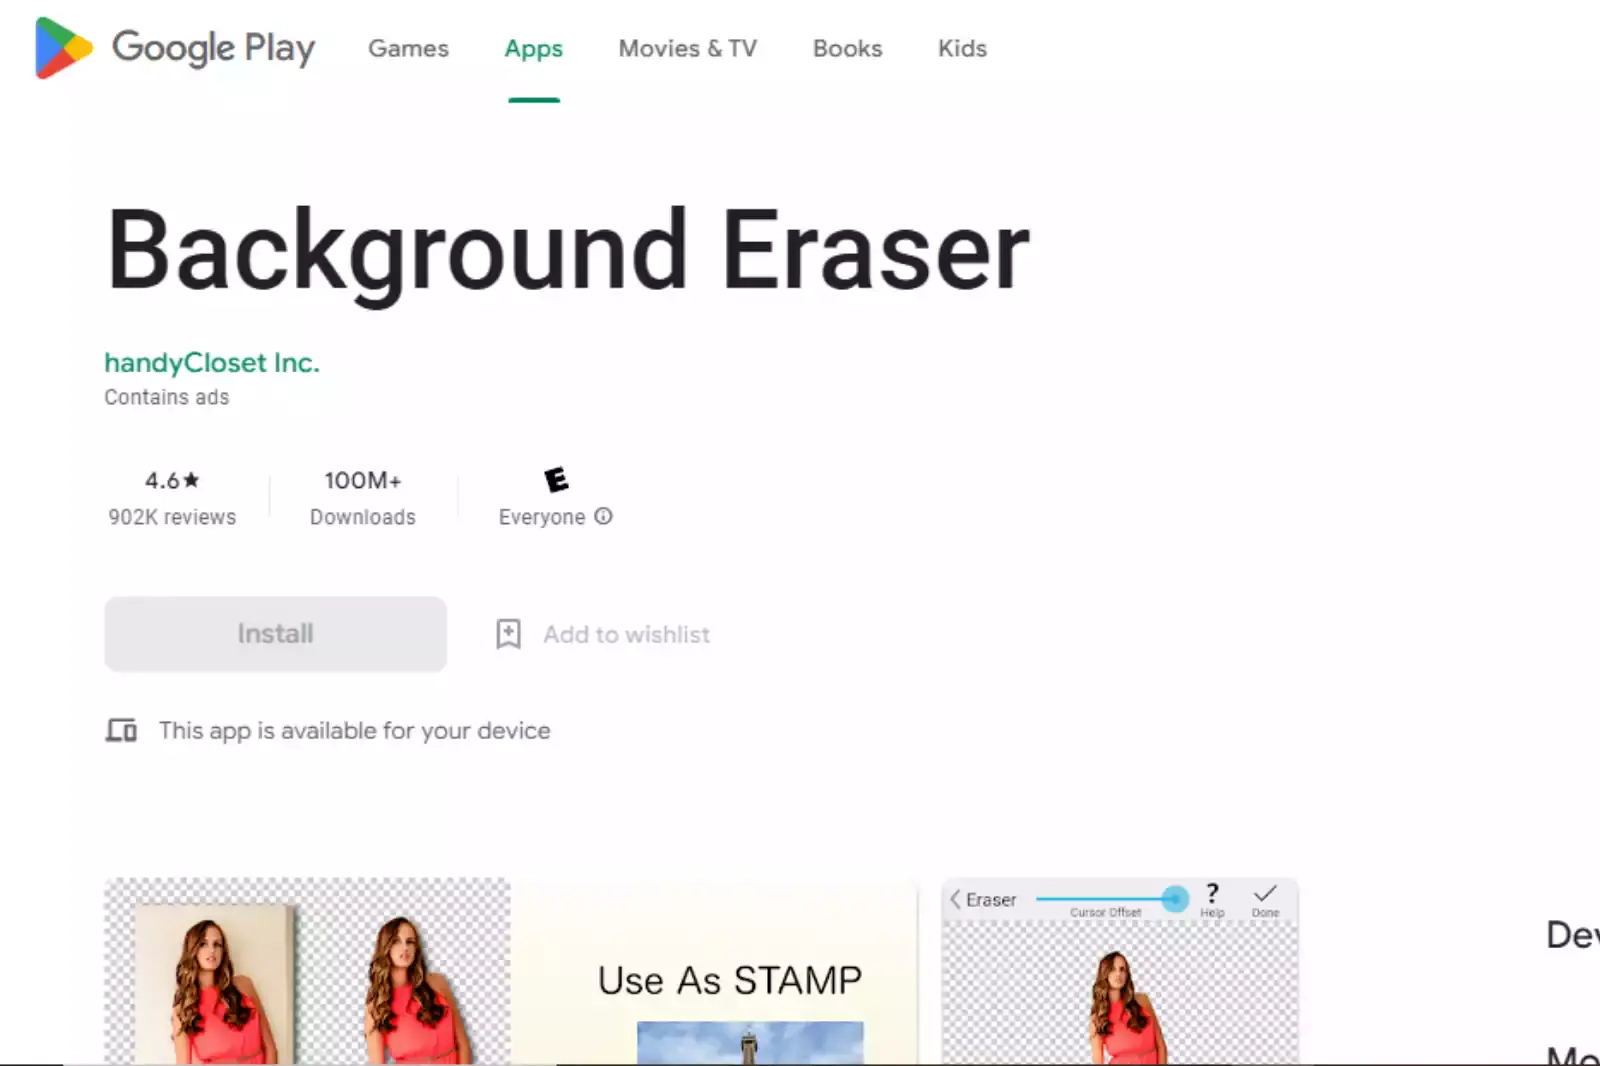 Background Eraser by HandyCloset